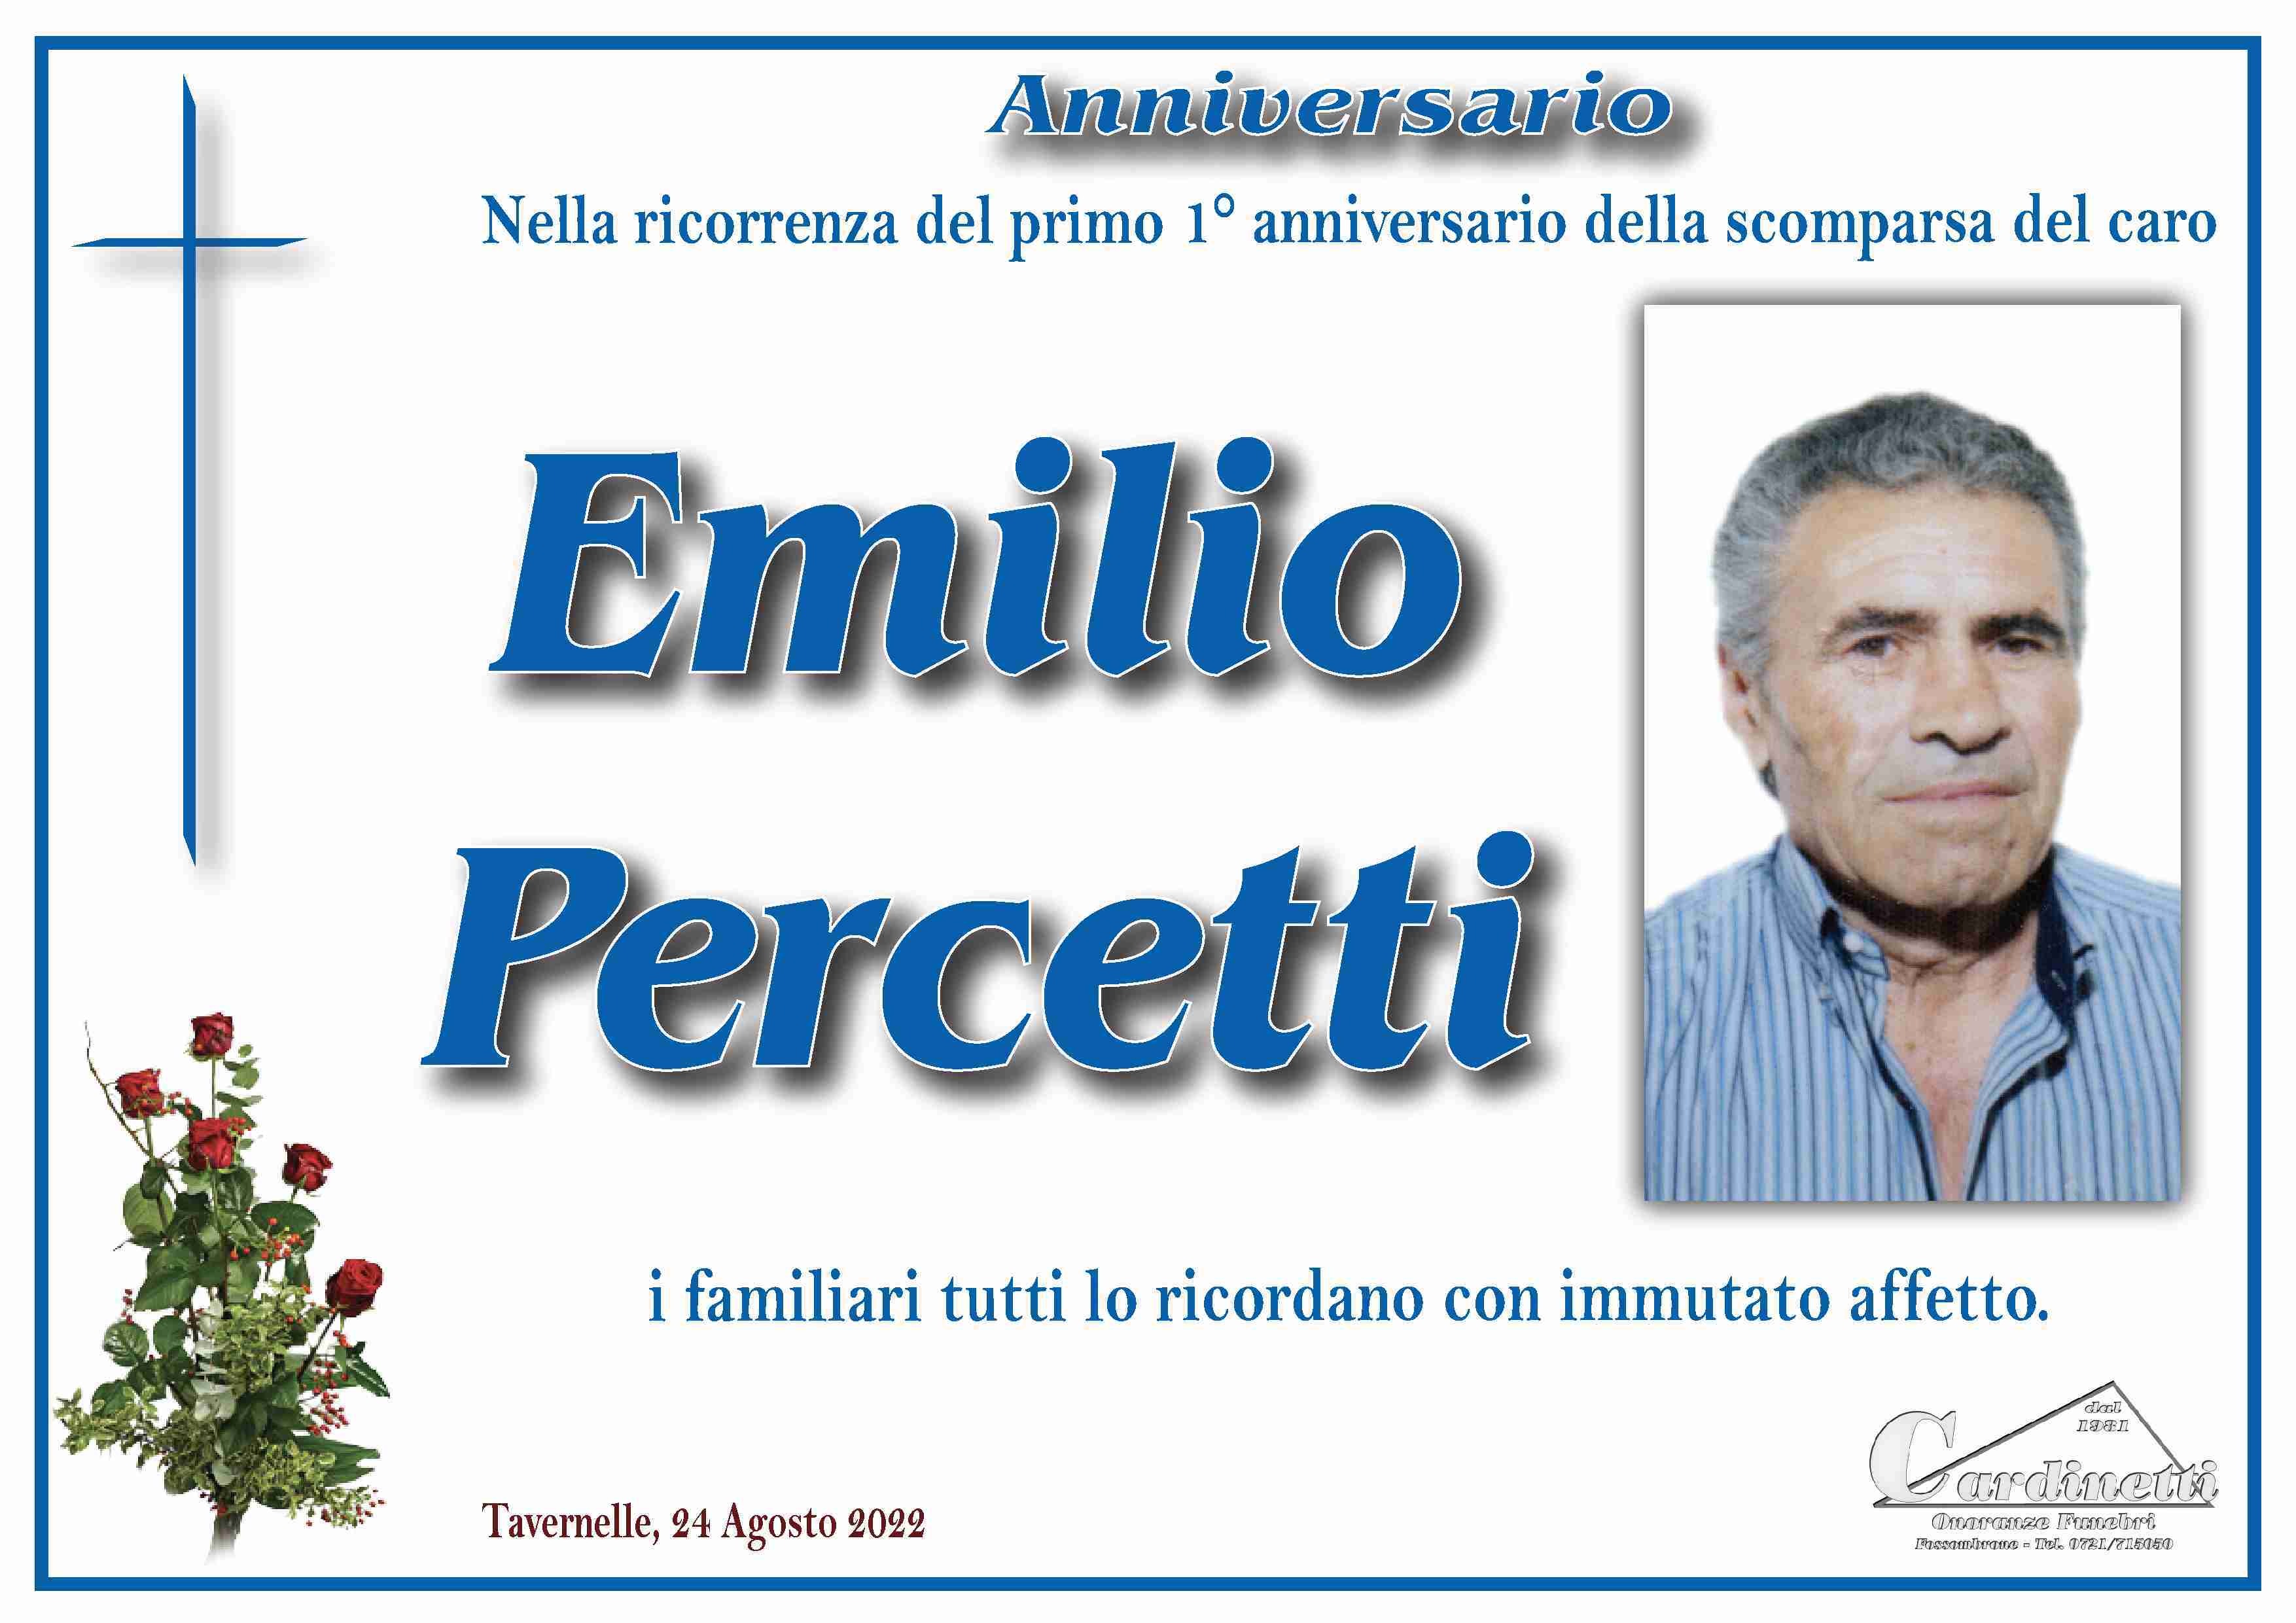 Emilio Percetti